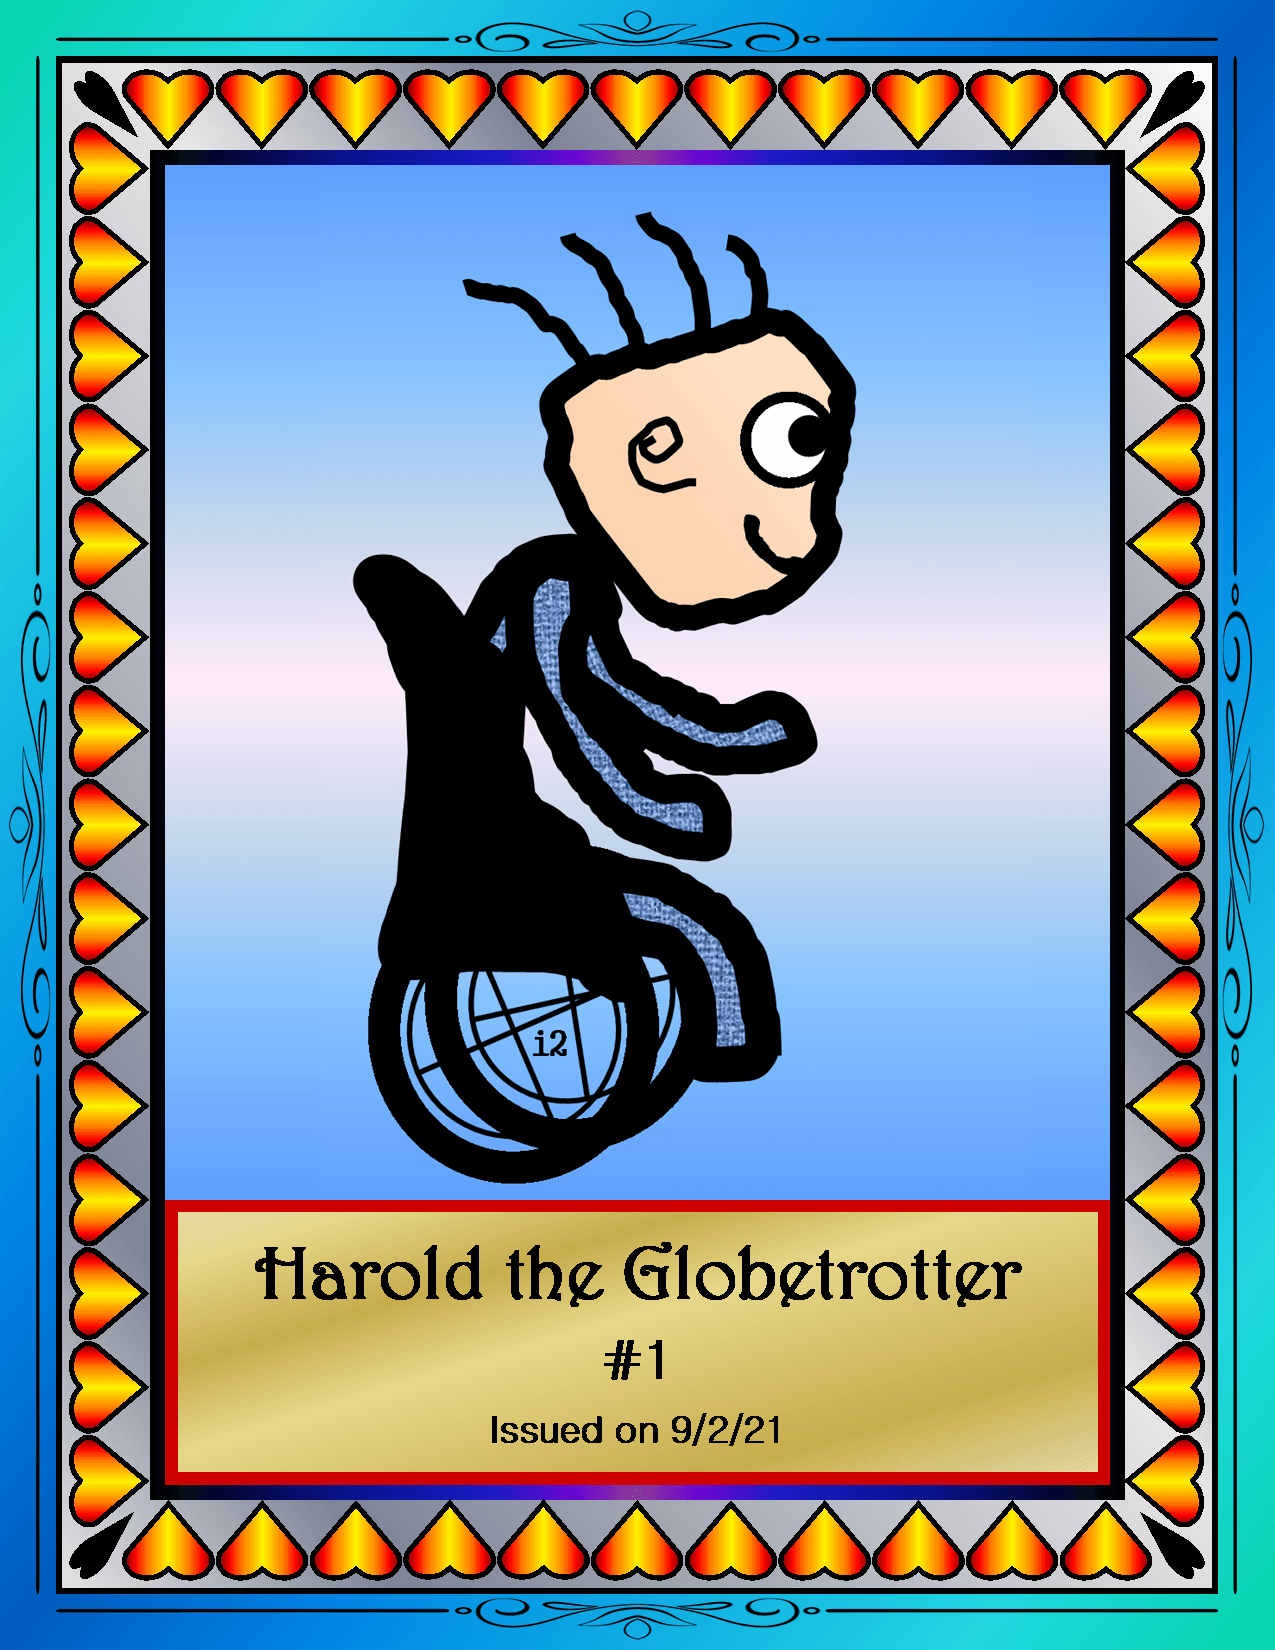 Harold the Globetrotter